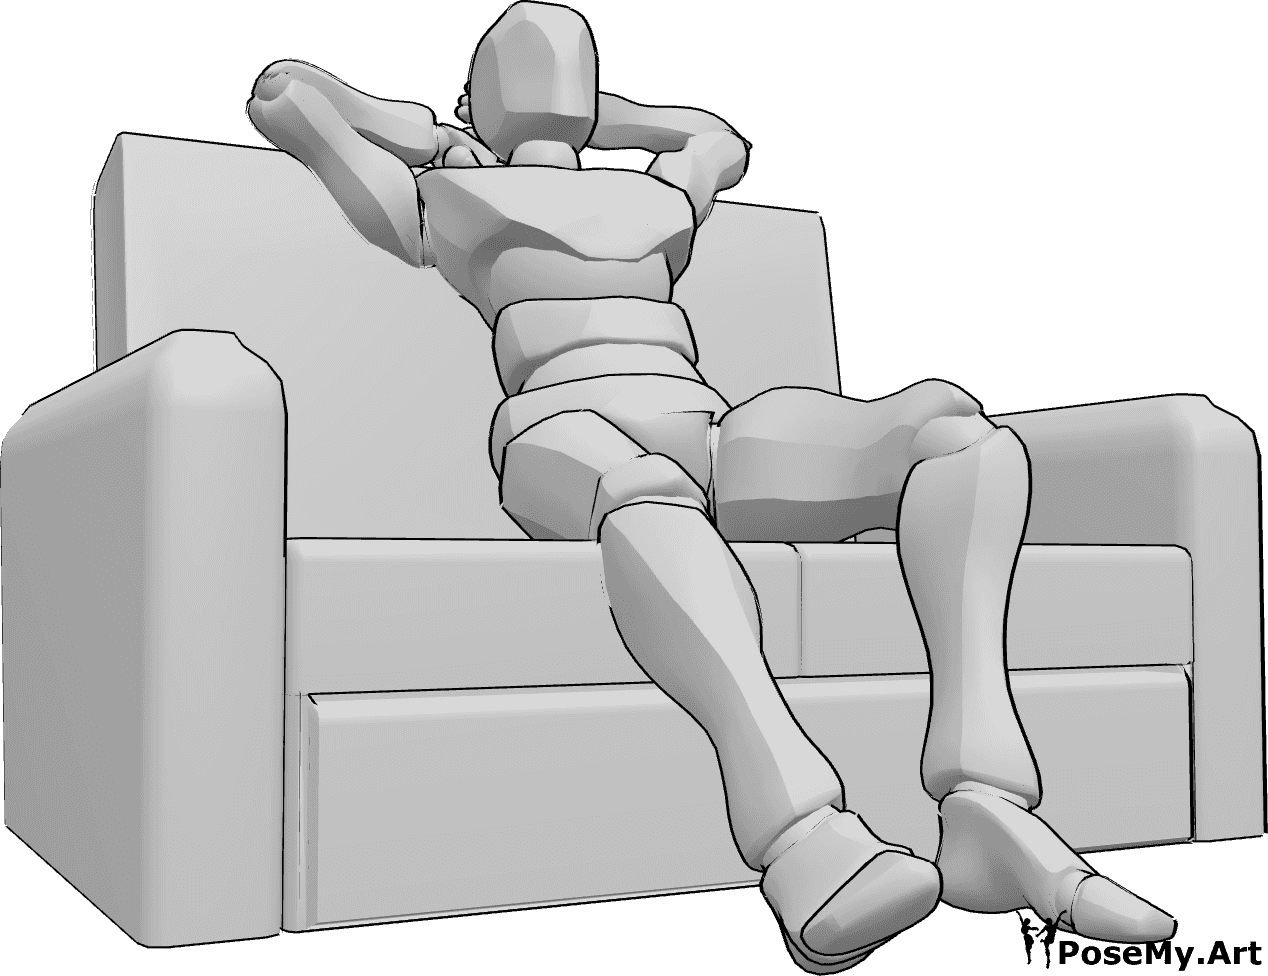 Referência de poses- Pose sentada no sofá - O homem está sentado confortavelmente no sofá, esticando as pernas e os braços